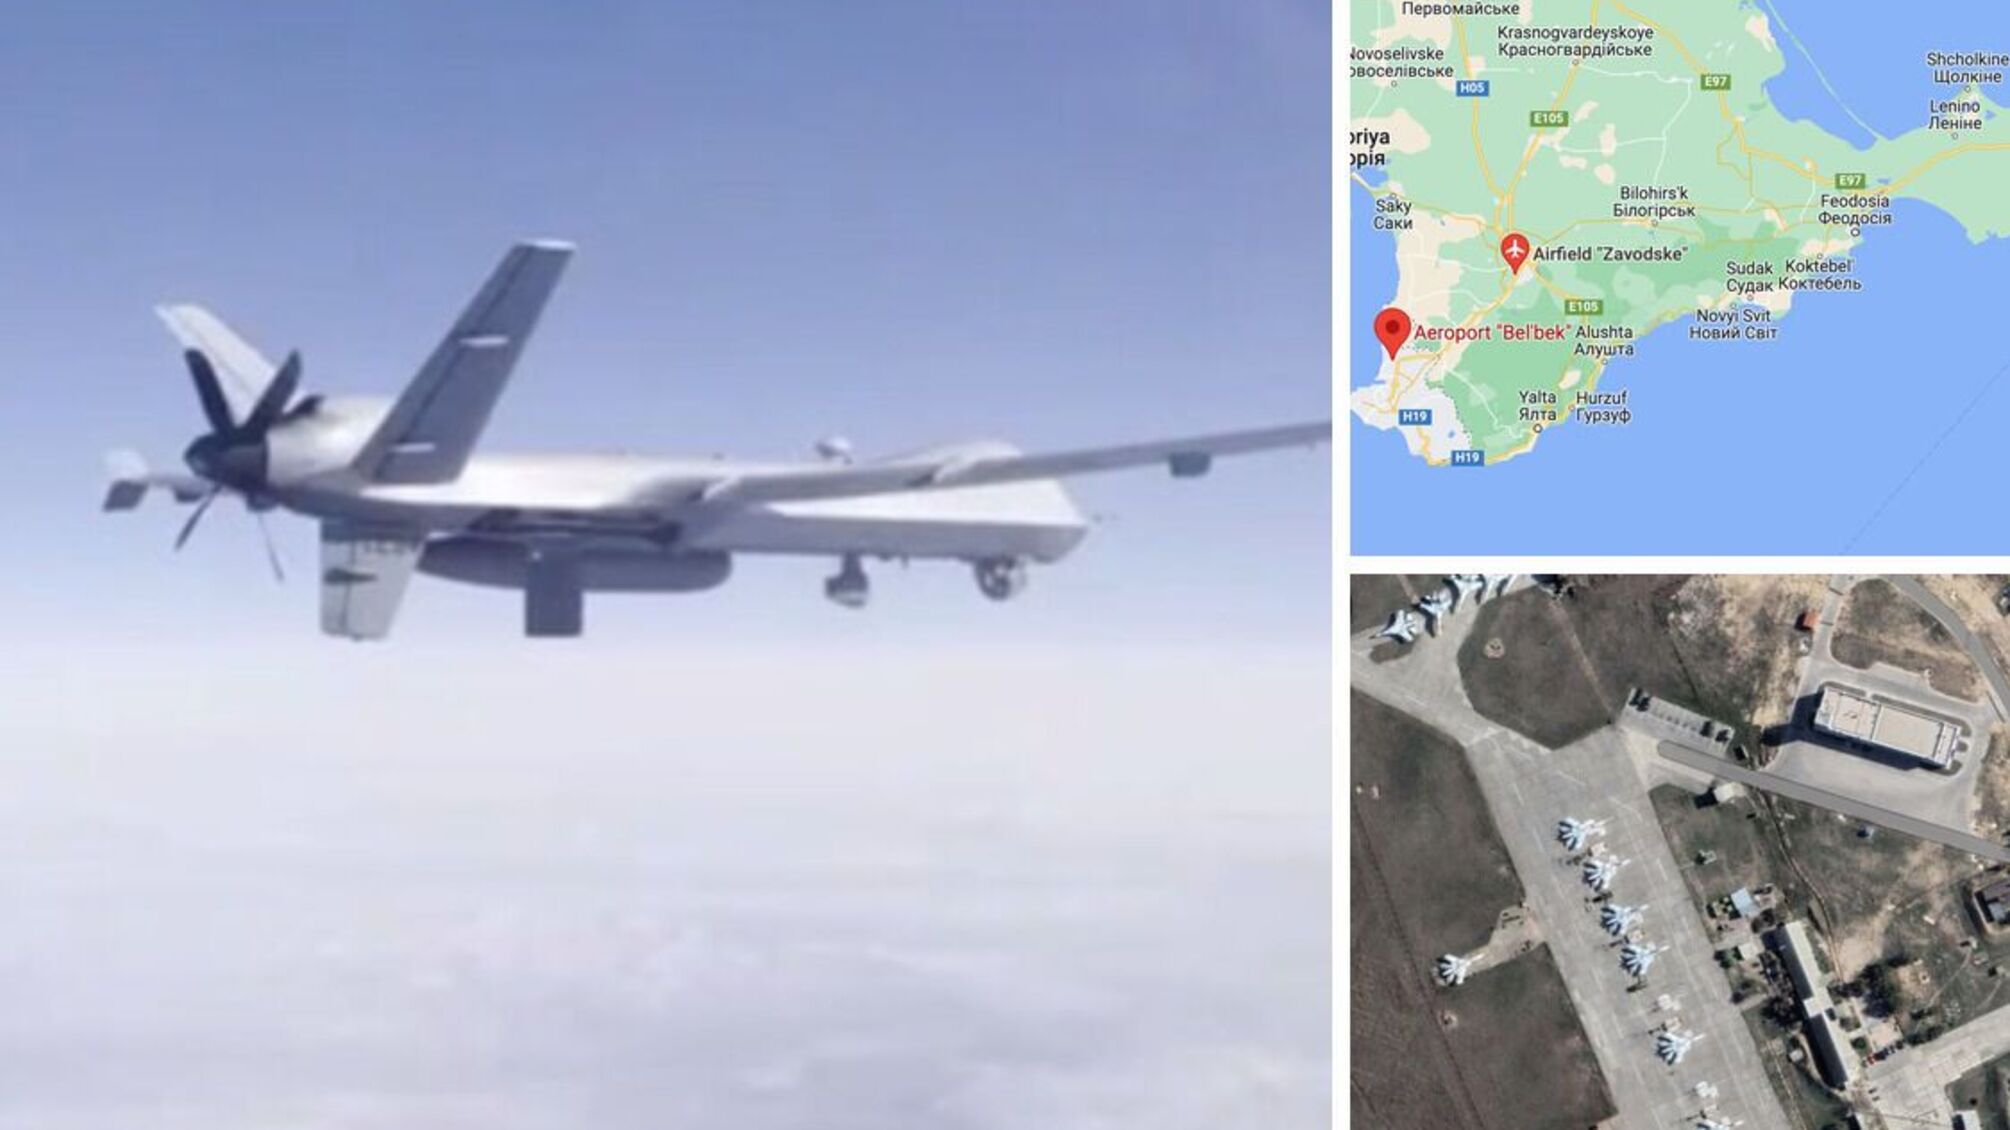 Злетів з Бельбеку: росіяни похизувались кадрами прольоту свого Су-27 біля американського MQ-9